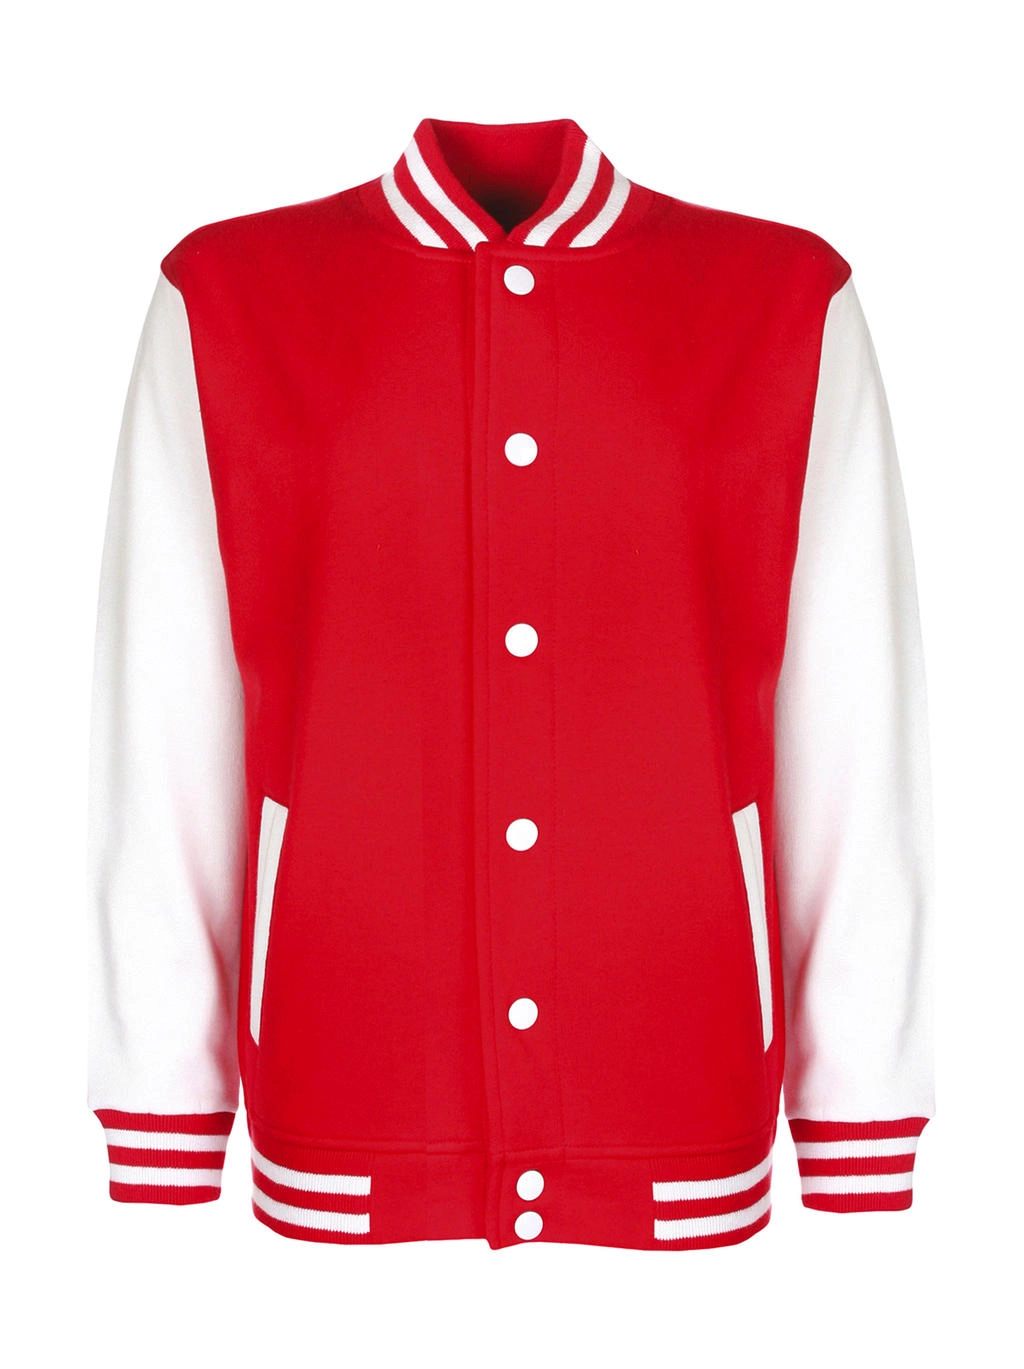 Junior Varsity Jacket zum Besticken und Bedrucken in der Farbe Fire Red/White mit Ihren Logo, Schriftzug oder Motiv.